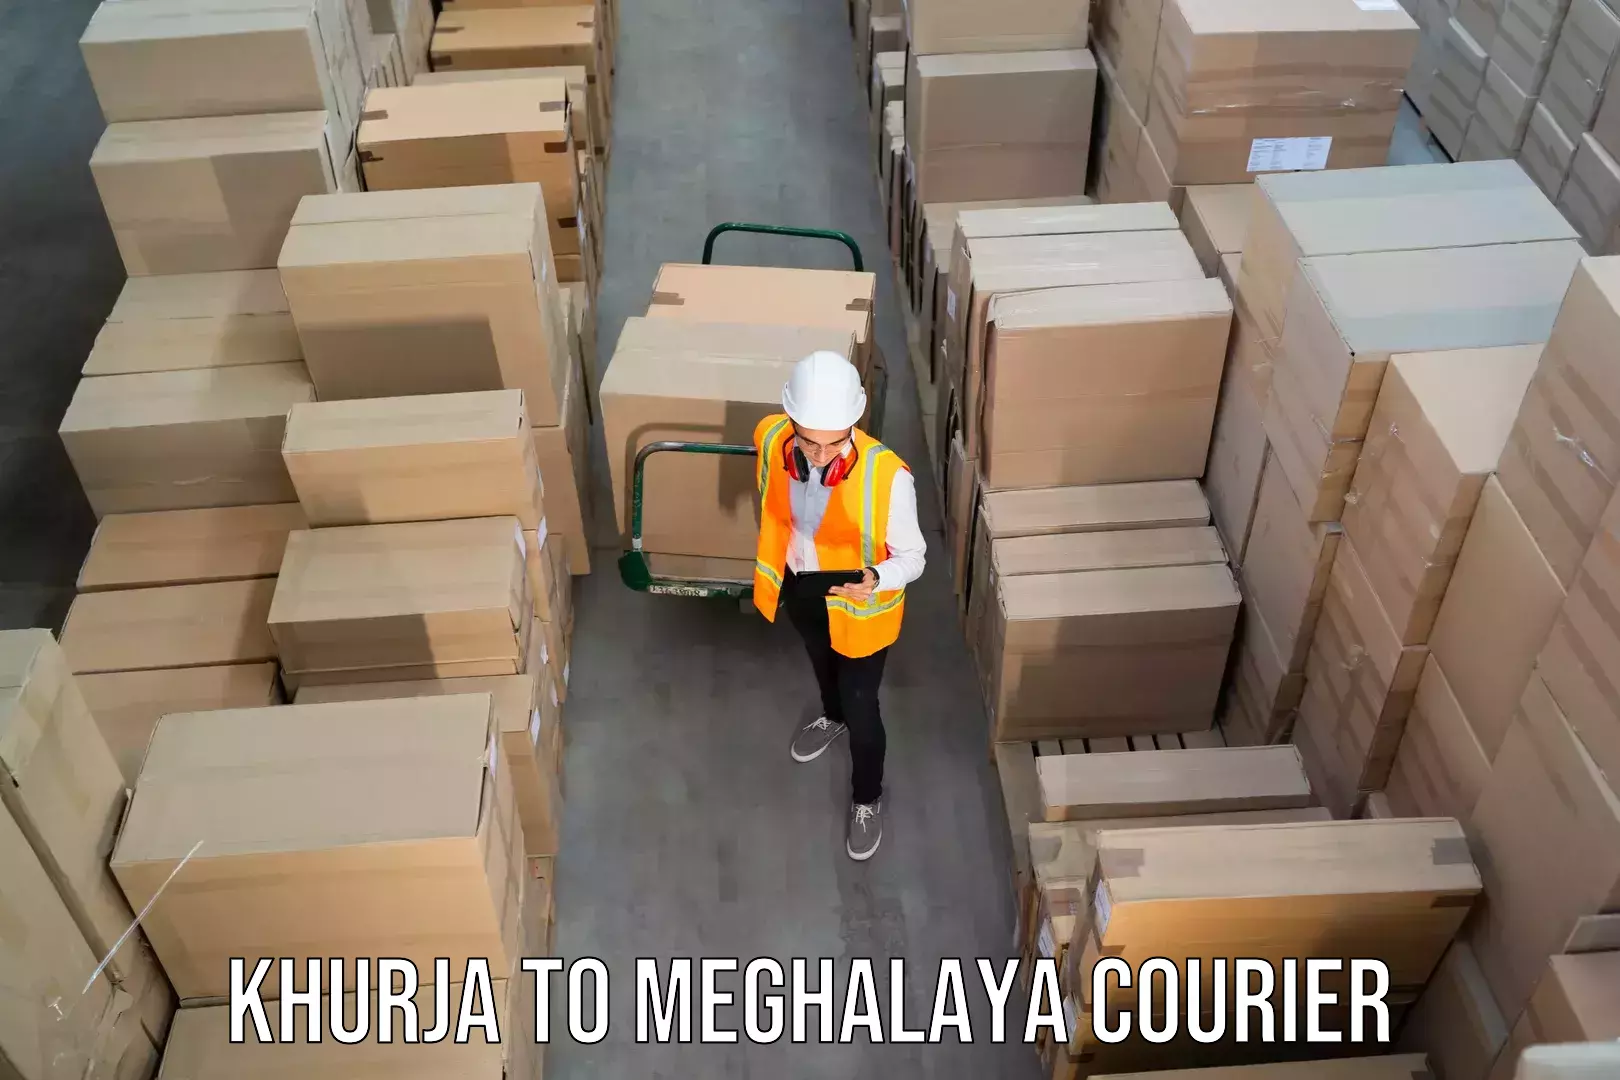 Cargo delivery service Khurja to Cherrapunji